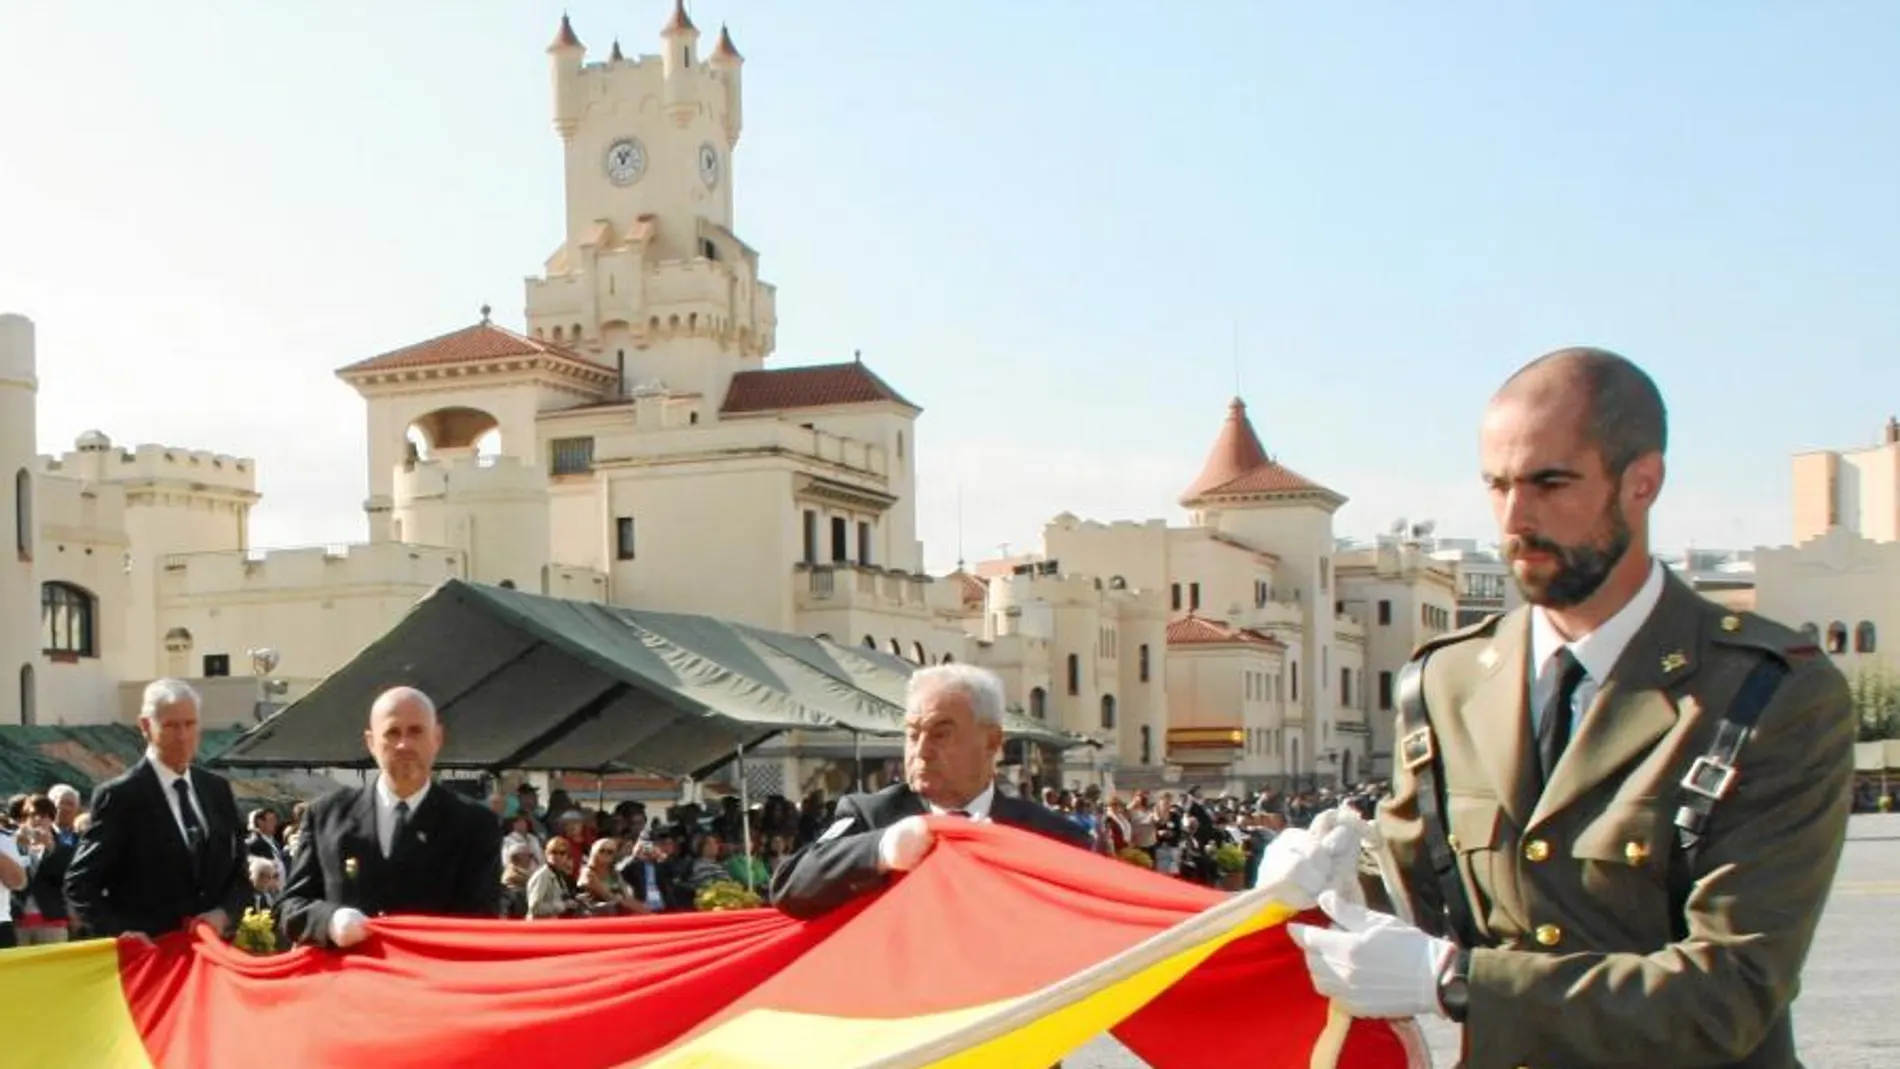 En el año 2015 tuvo lugar en el Cuartel General del Bruc la mayor jura de bandera del año, en la que juraron lealtad a España 600 personas / Efe